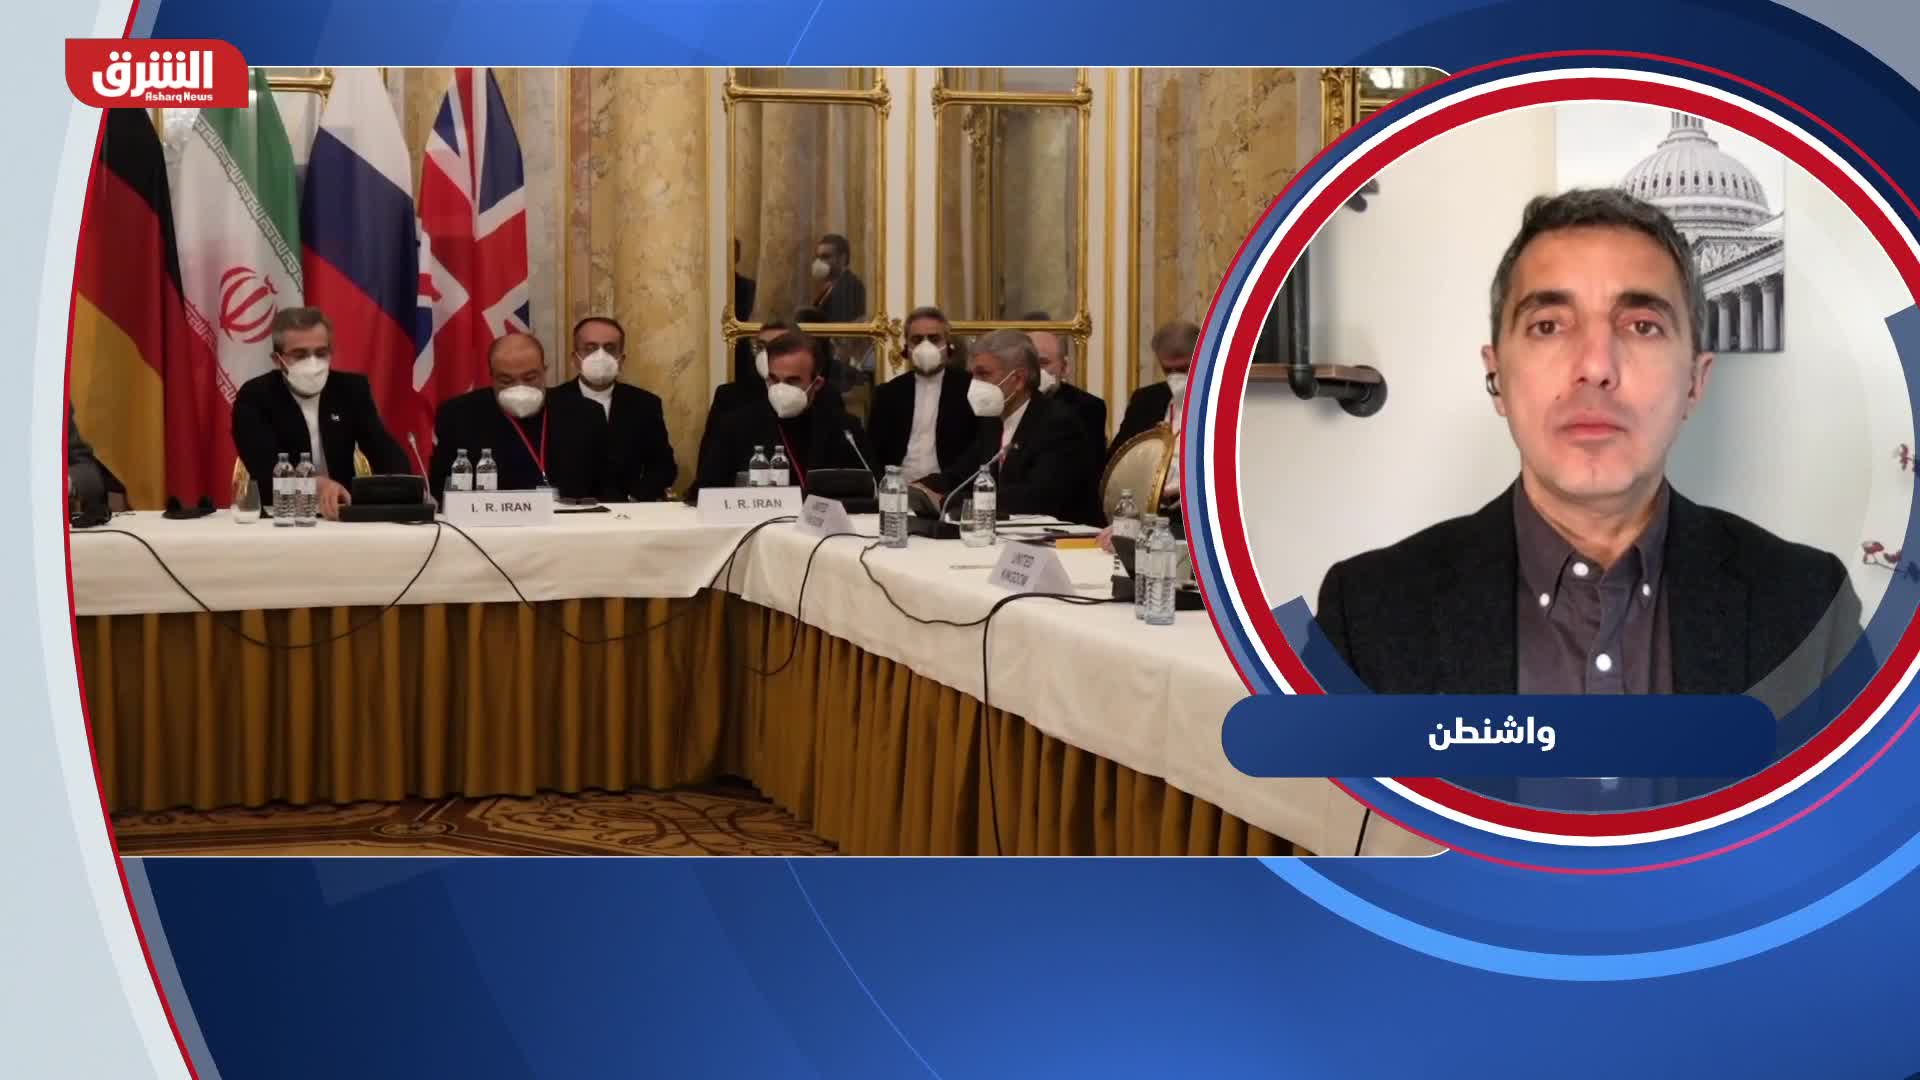 حسين عبد الحسين: تباين واسع بين أعضاء فريق التفاوض الأميركي بشأن إيران